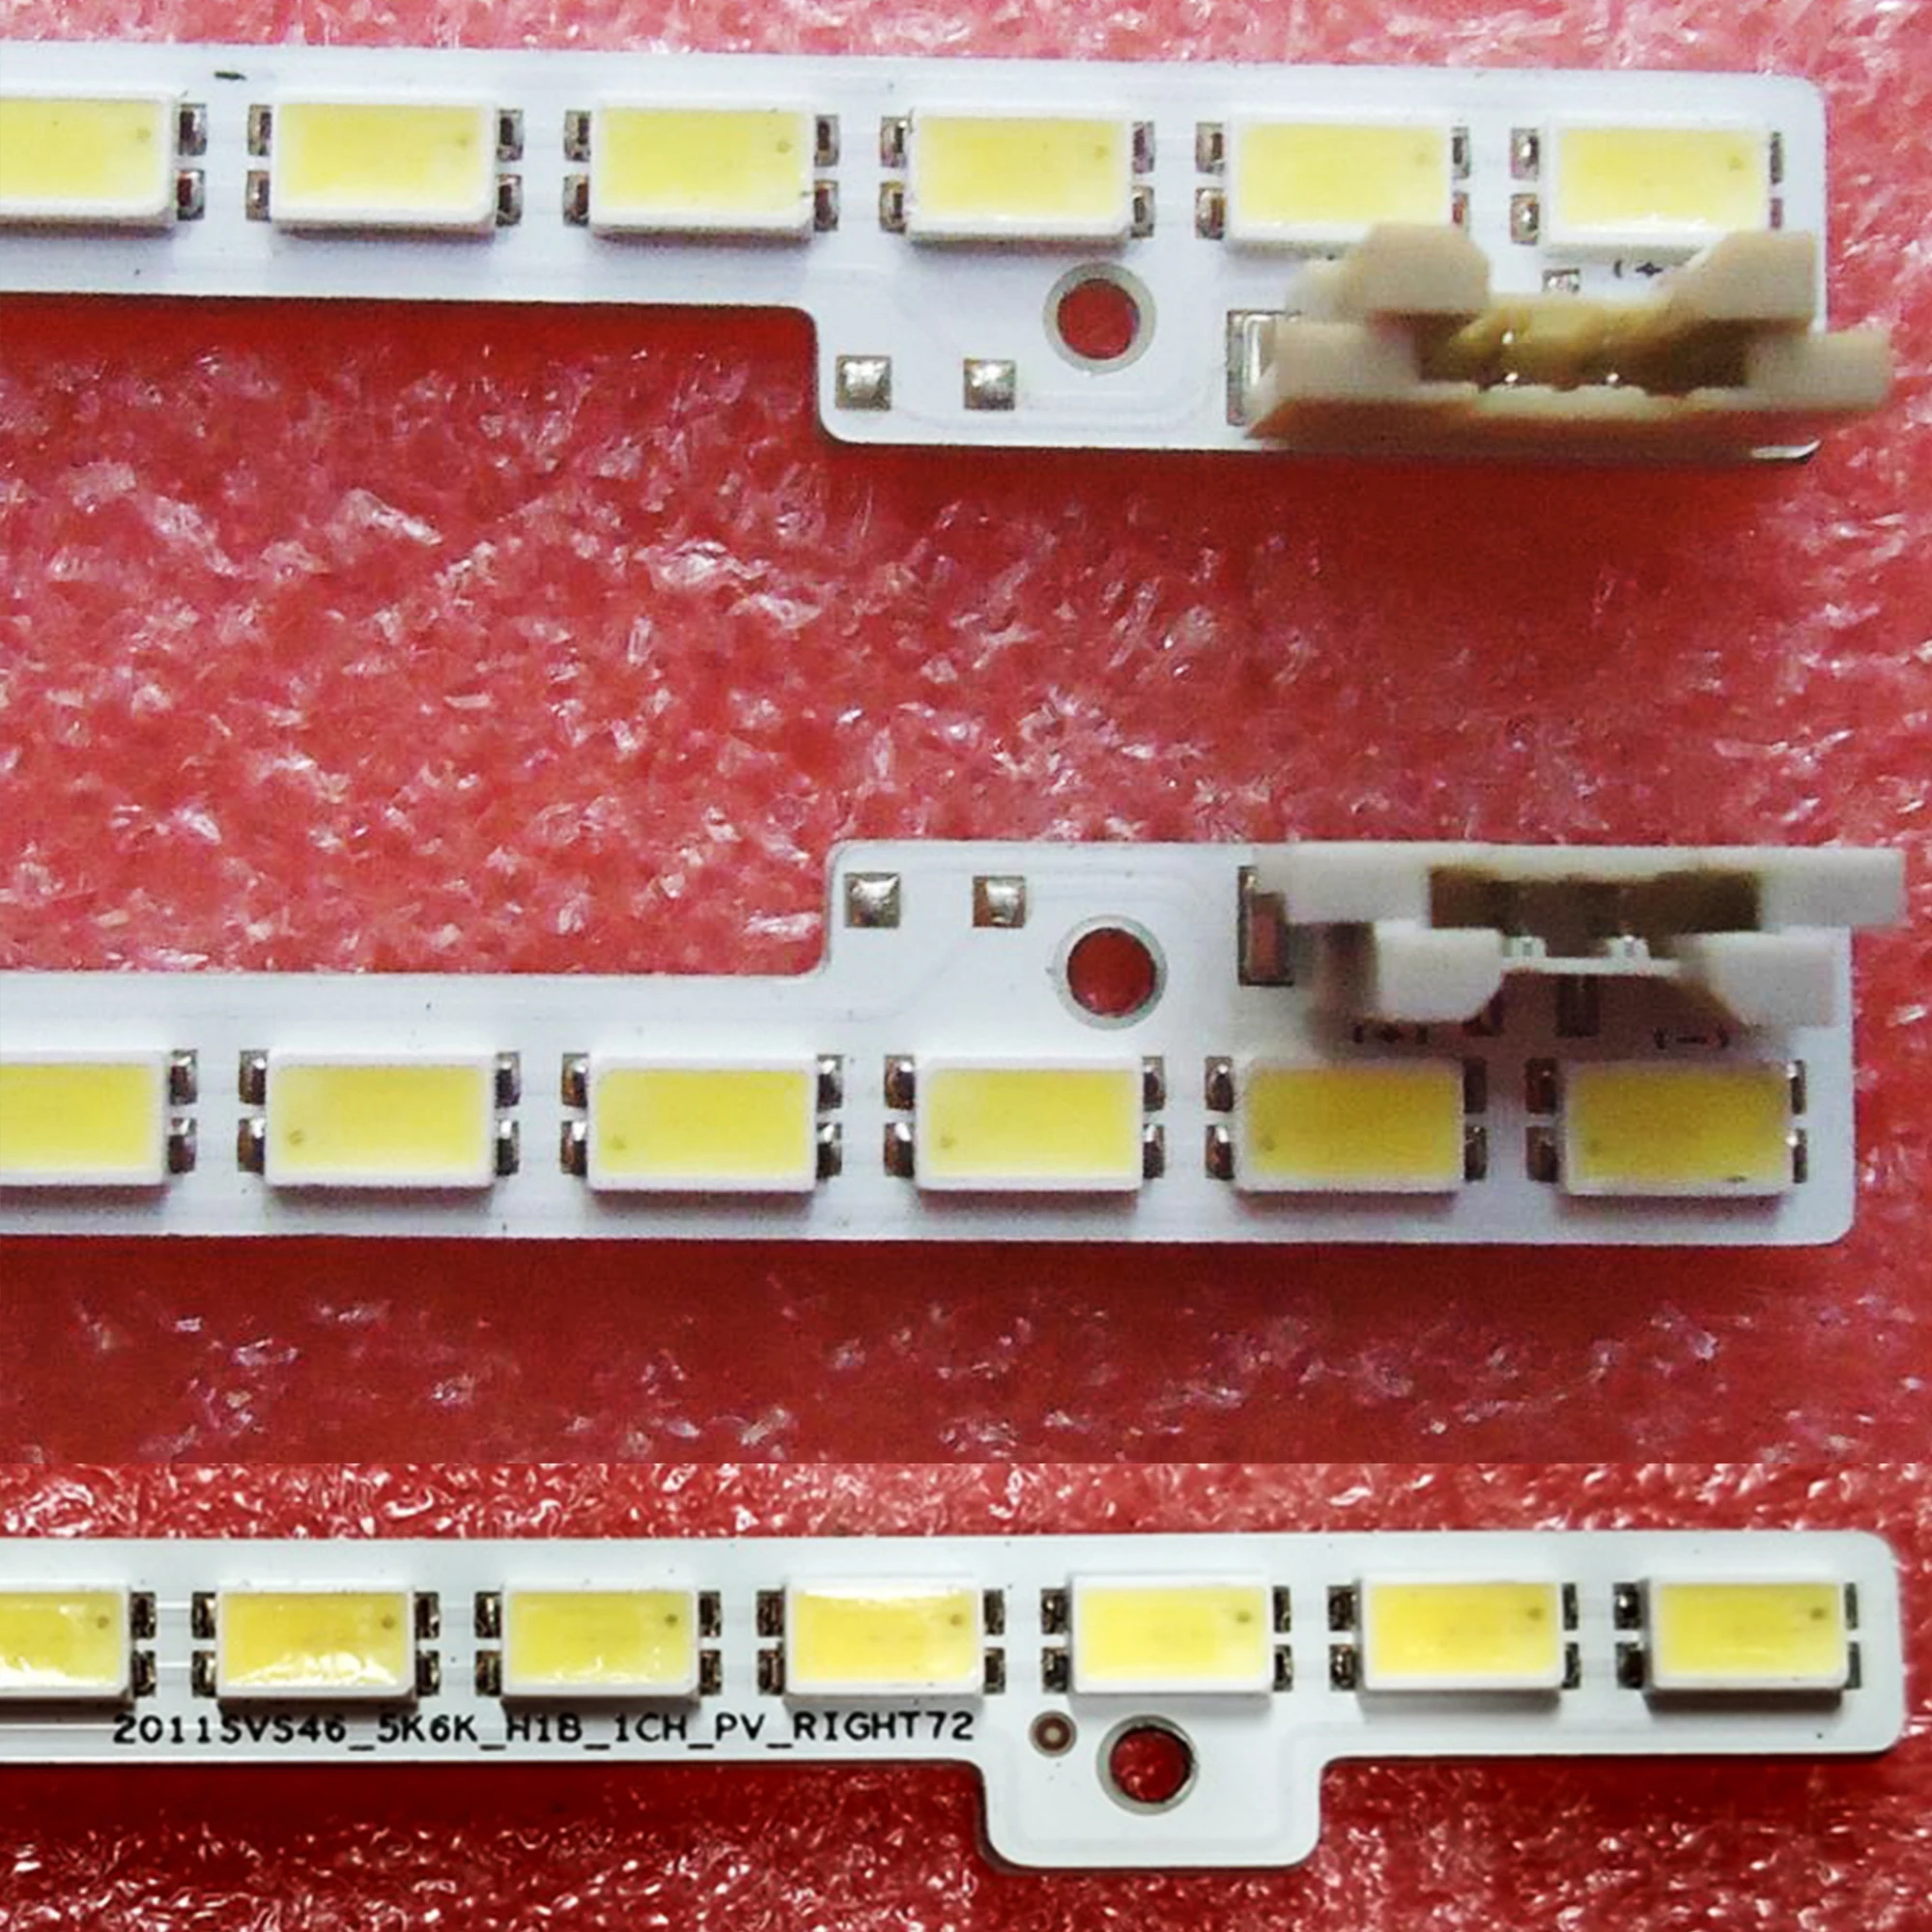 TV Lamps LED Backlight Strips For Samsung UE46D5000 UE46D5500 LED Bars 2011SVS46-FHD-5K6K-LEFT Bands Rulers 2011SVS46_5K6K_H1B led backlight strips for bbk 32lex 5027 t2c shivaki stv 32led14 led bars hl 00320a28 0701s 04 bands rulers zdcx32d07 zc14fg 05